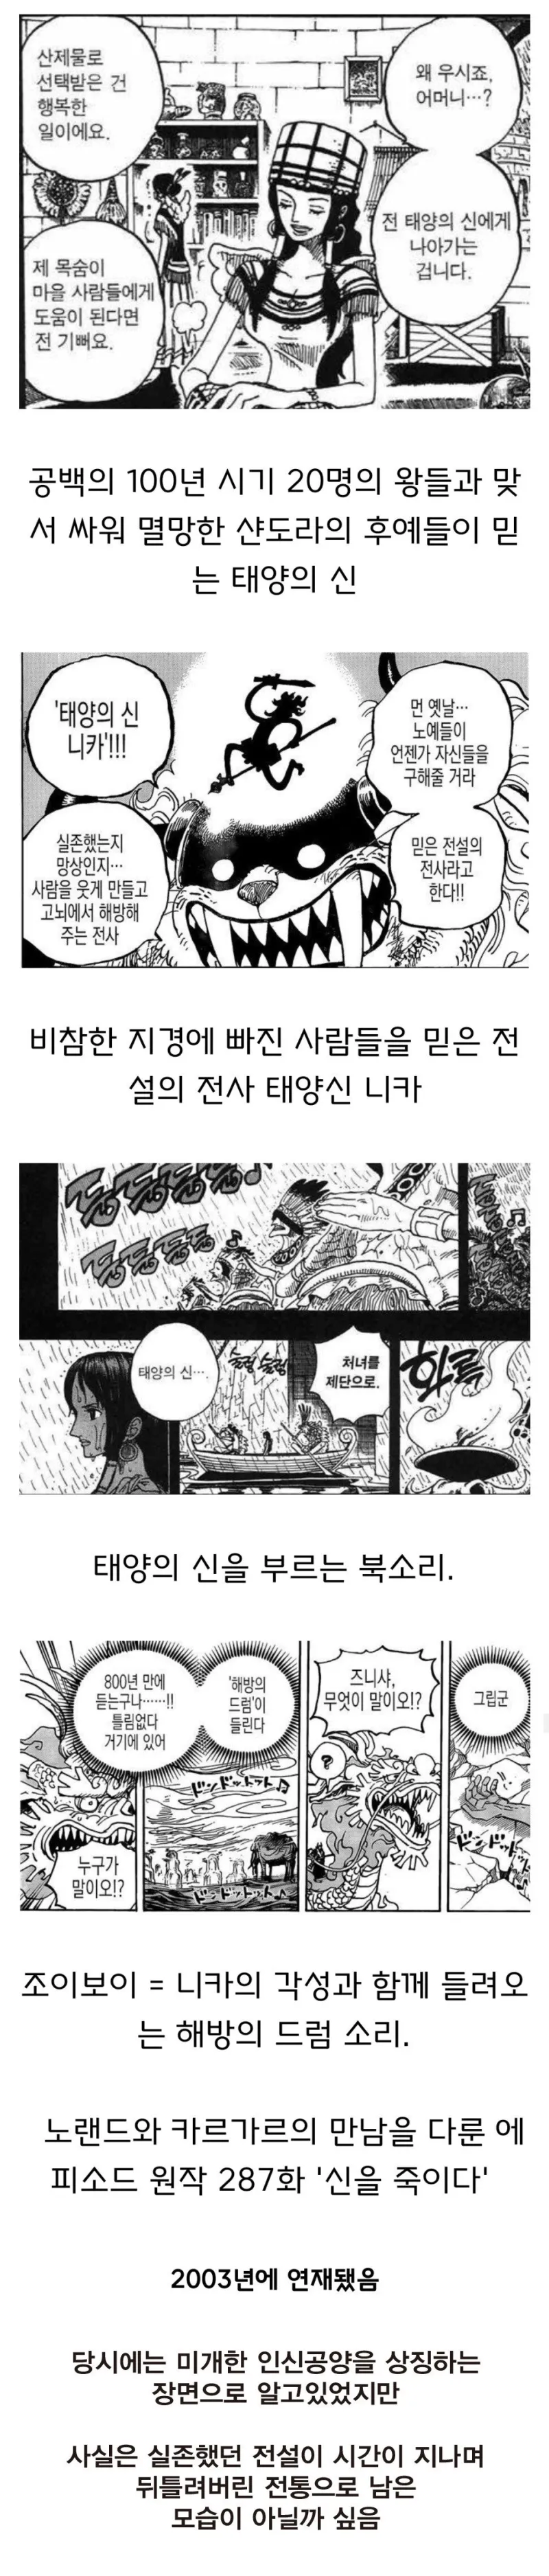 원피스 떡밥